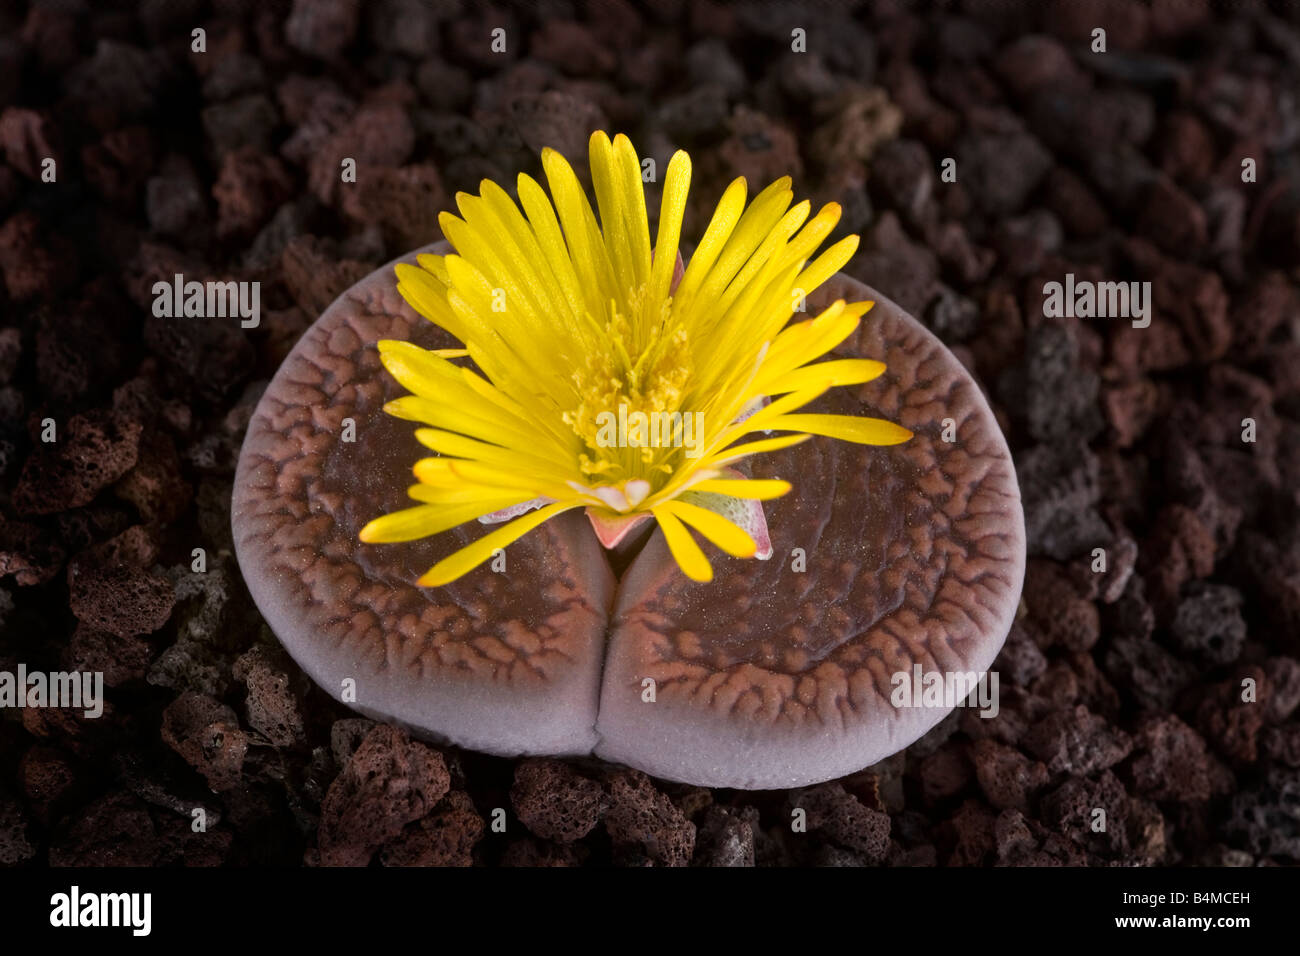 A Flowering stone (Lithops aucampiae). Plante caillou (Lithops aucampiae) en fleur. Stock Photo